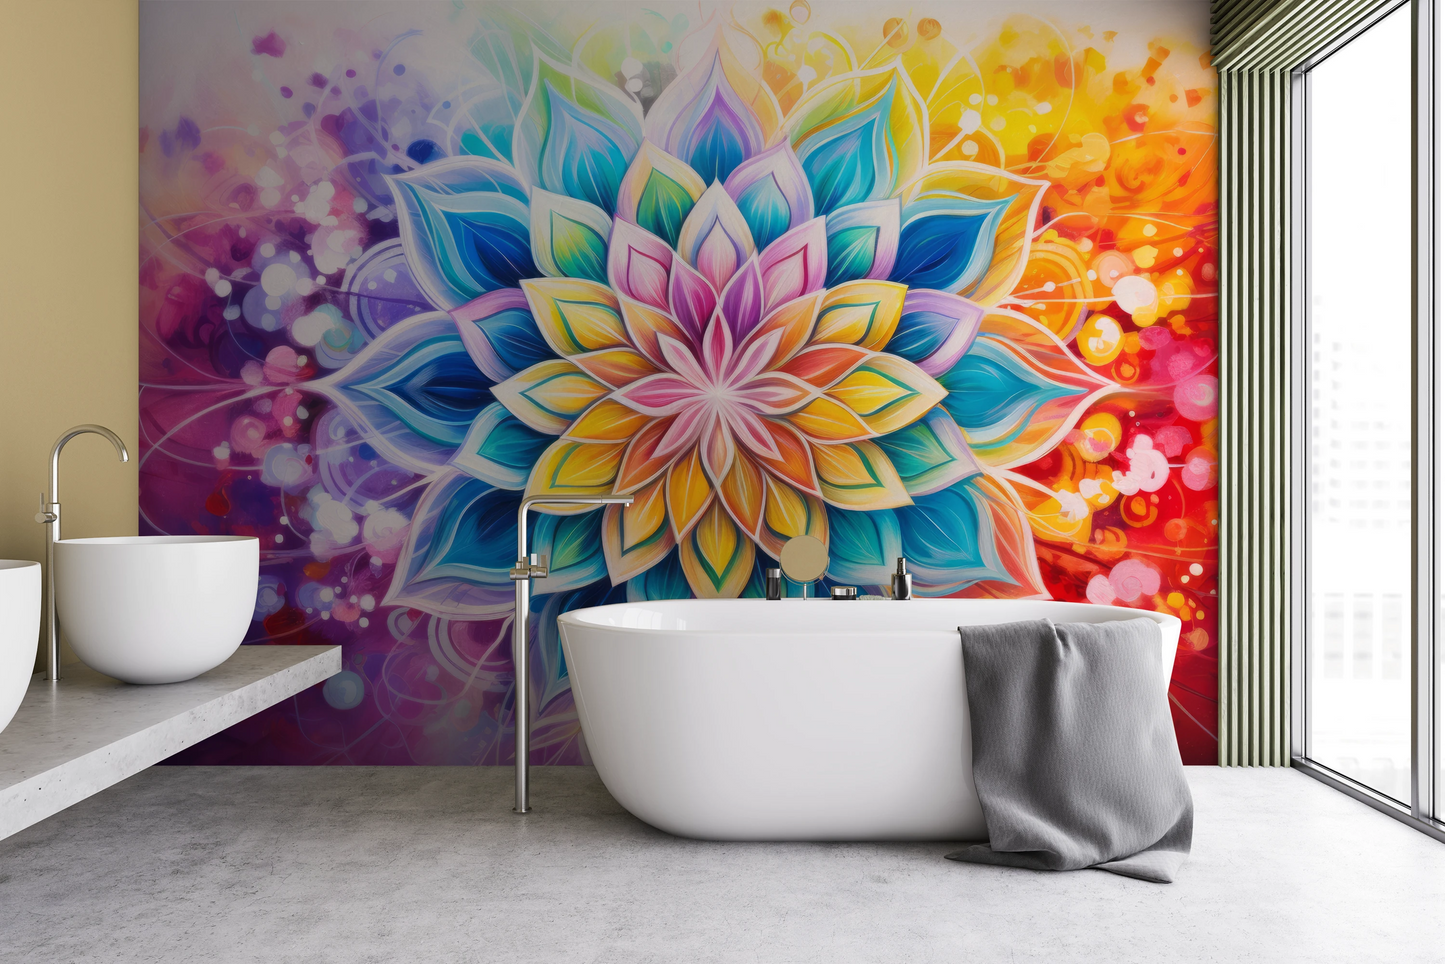 Wzór fototapety malowanej o nazwie Floral Harmony pokazanej w aranżacji wnętrza.